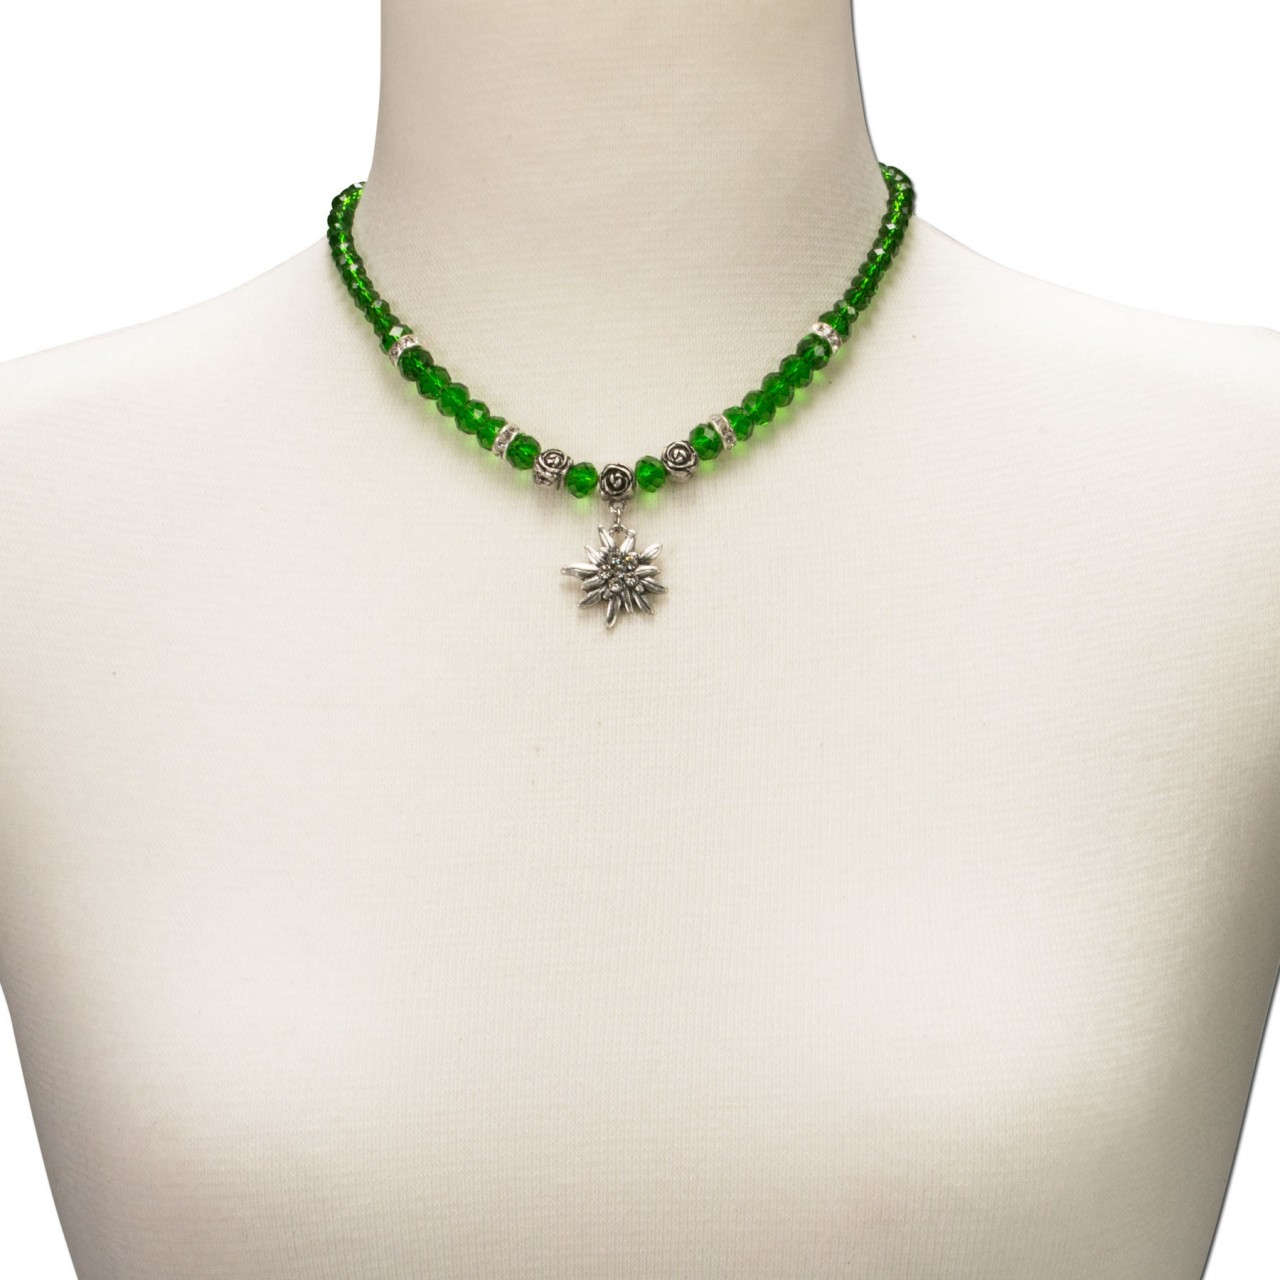 Podgląd: Naszyjnik z pereł mały zielony szarotka